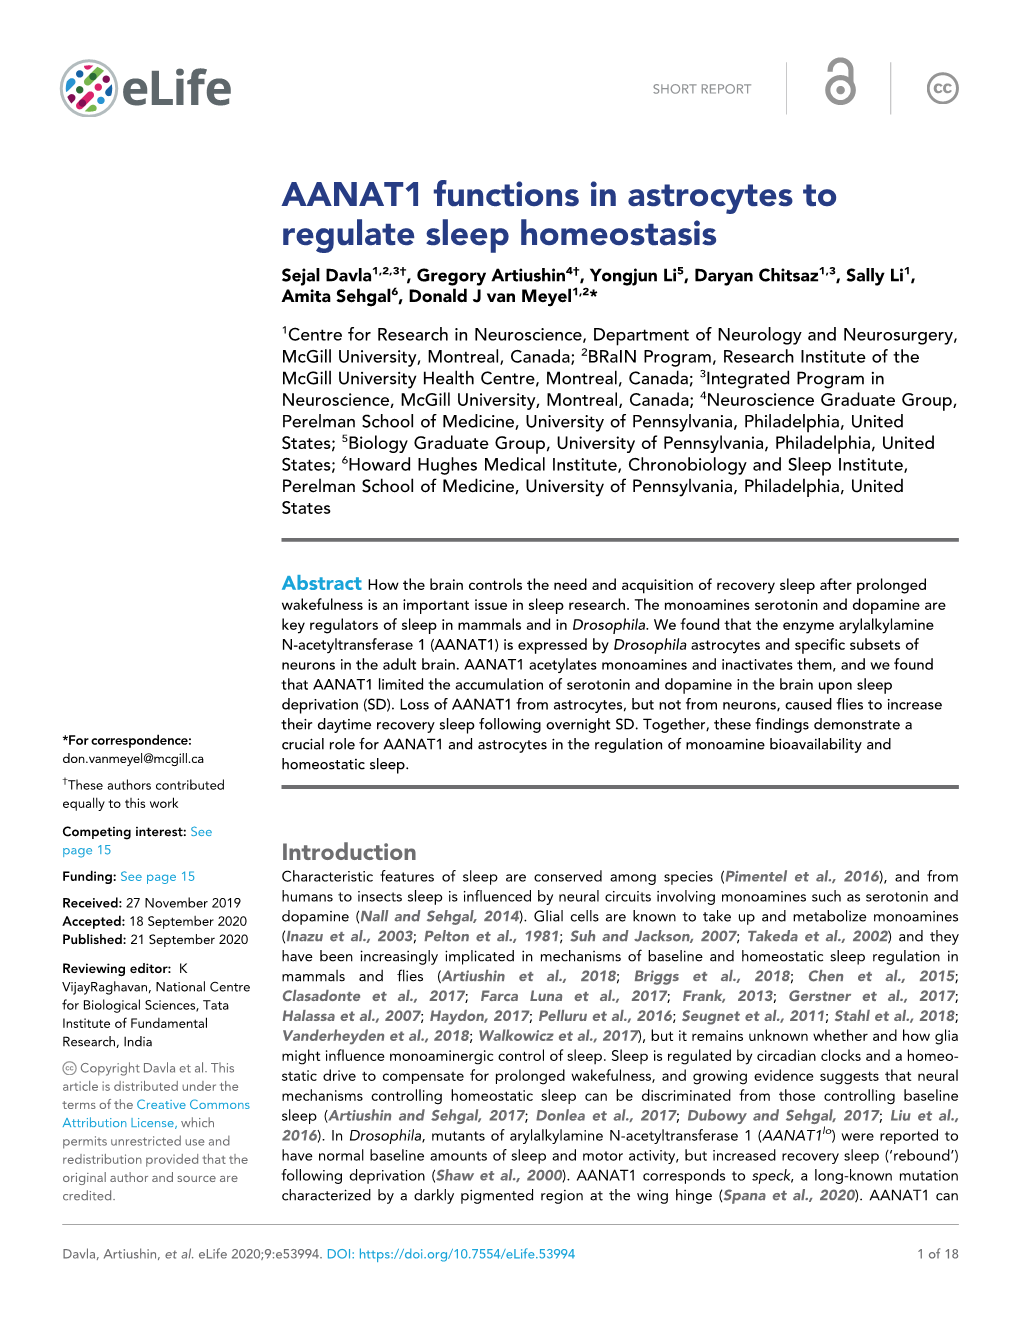 AANAT1 Functions in Astrocytes to Regulate Sleep Homeostasis